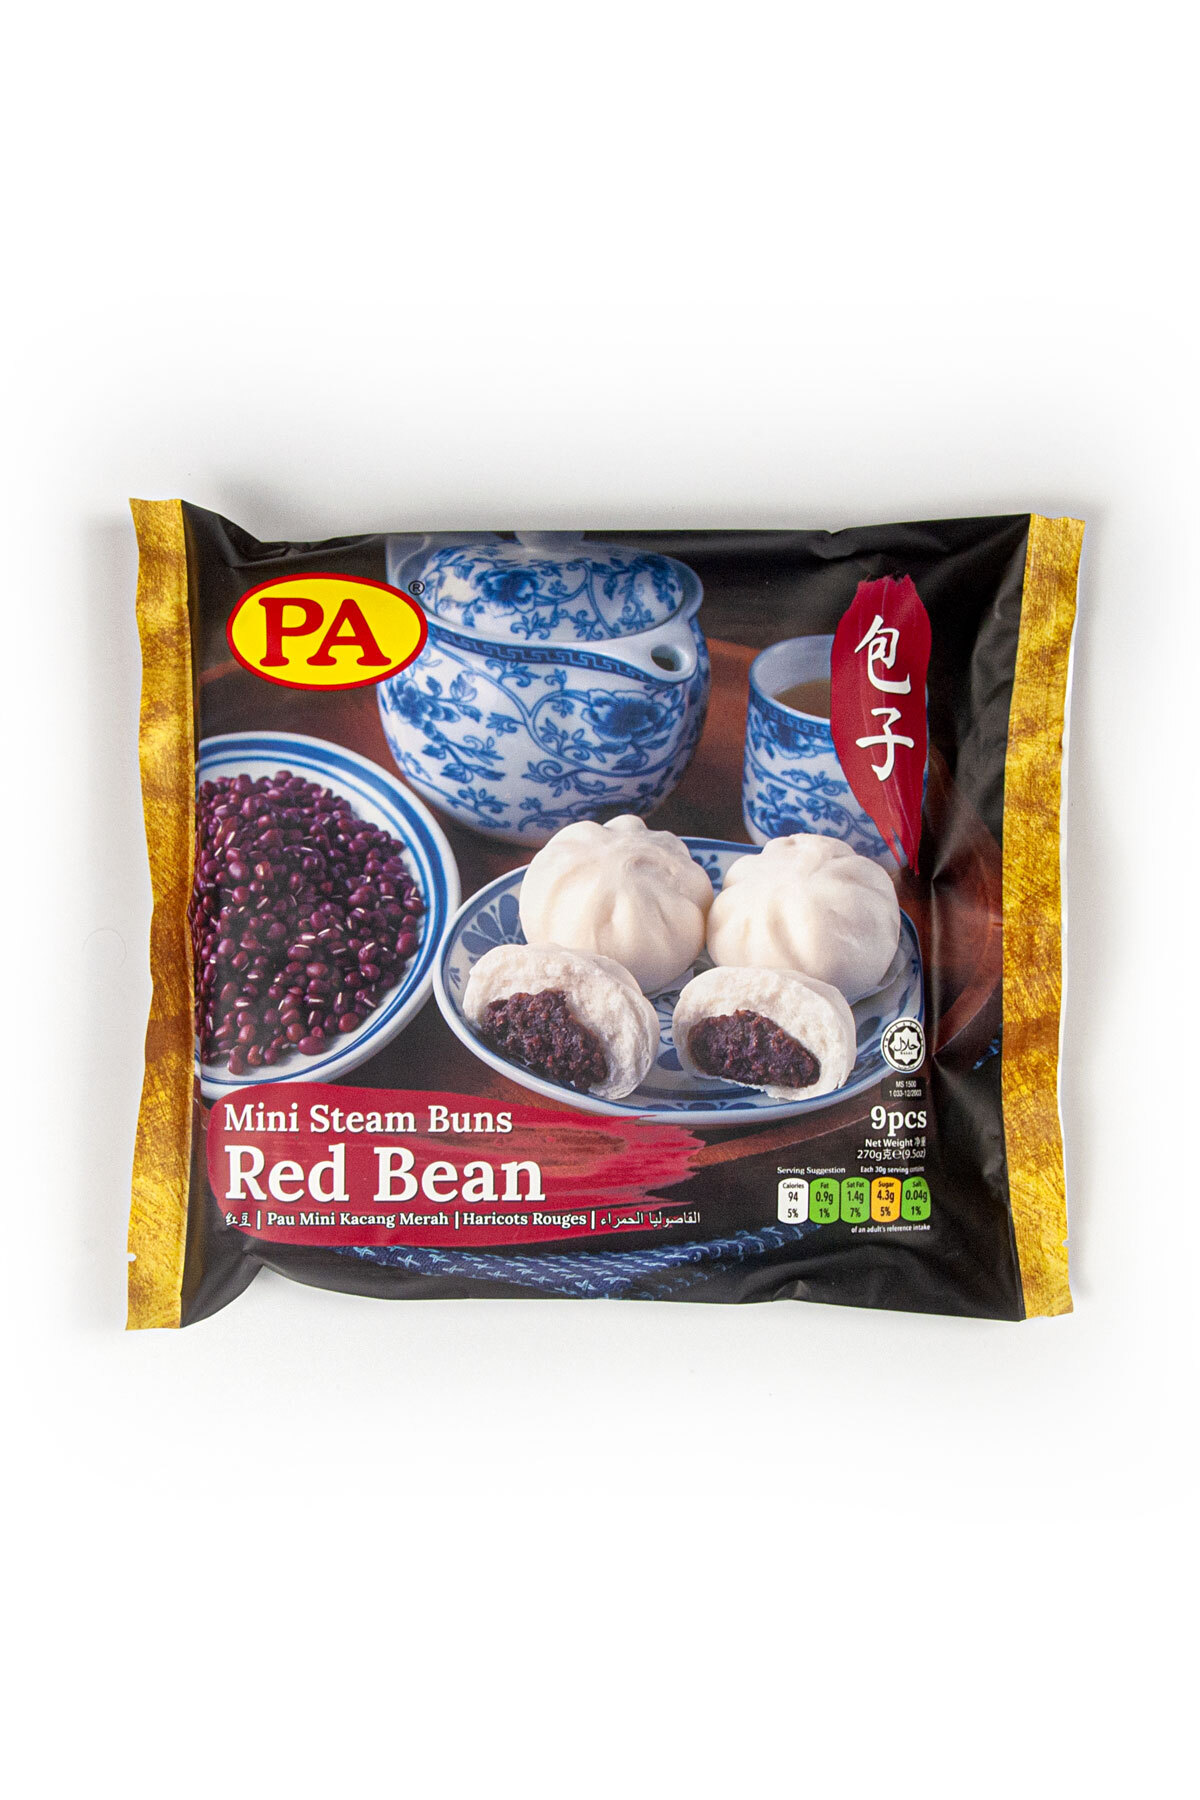 mini-steam-buns-red-bean packaging